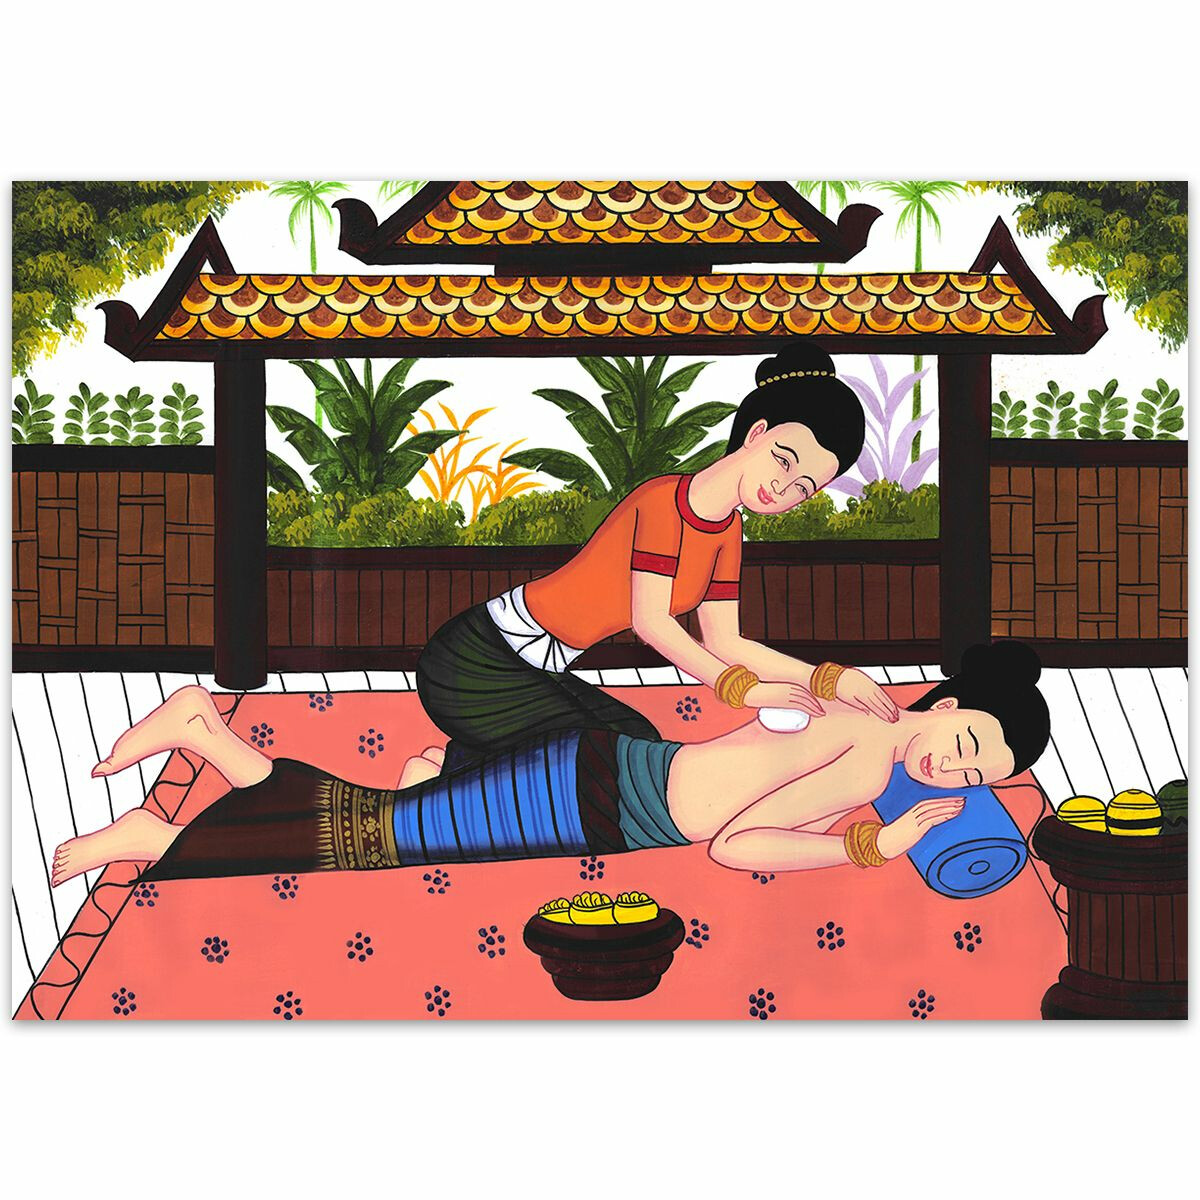 Thai Kunst Bild Traditionelle Thaimassage Siam - No. 16